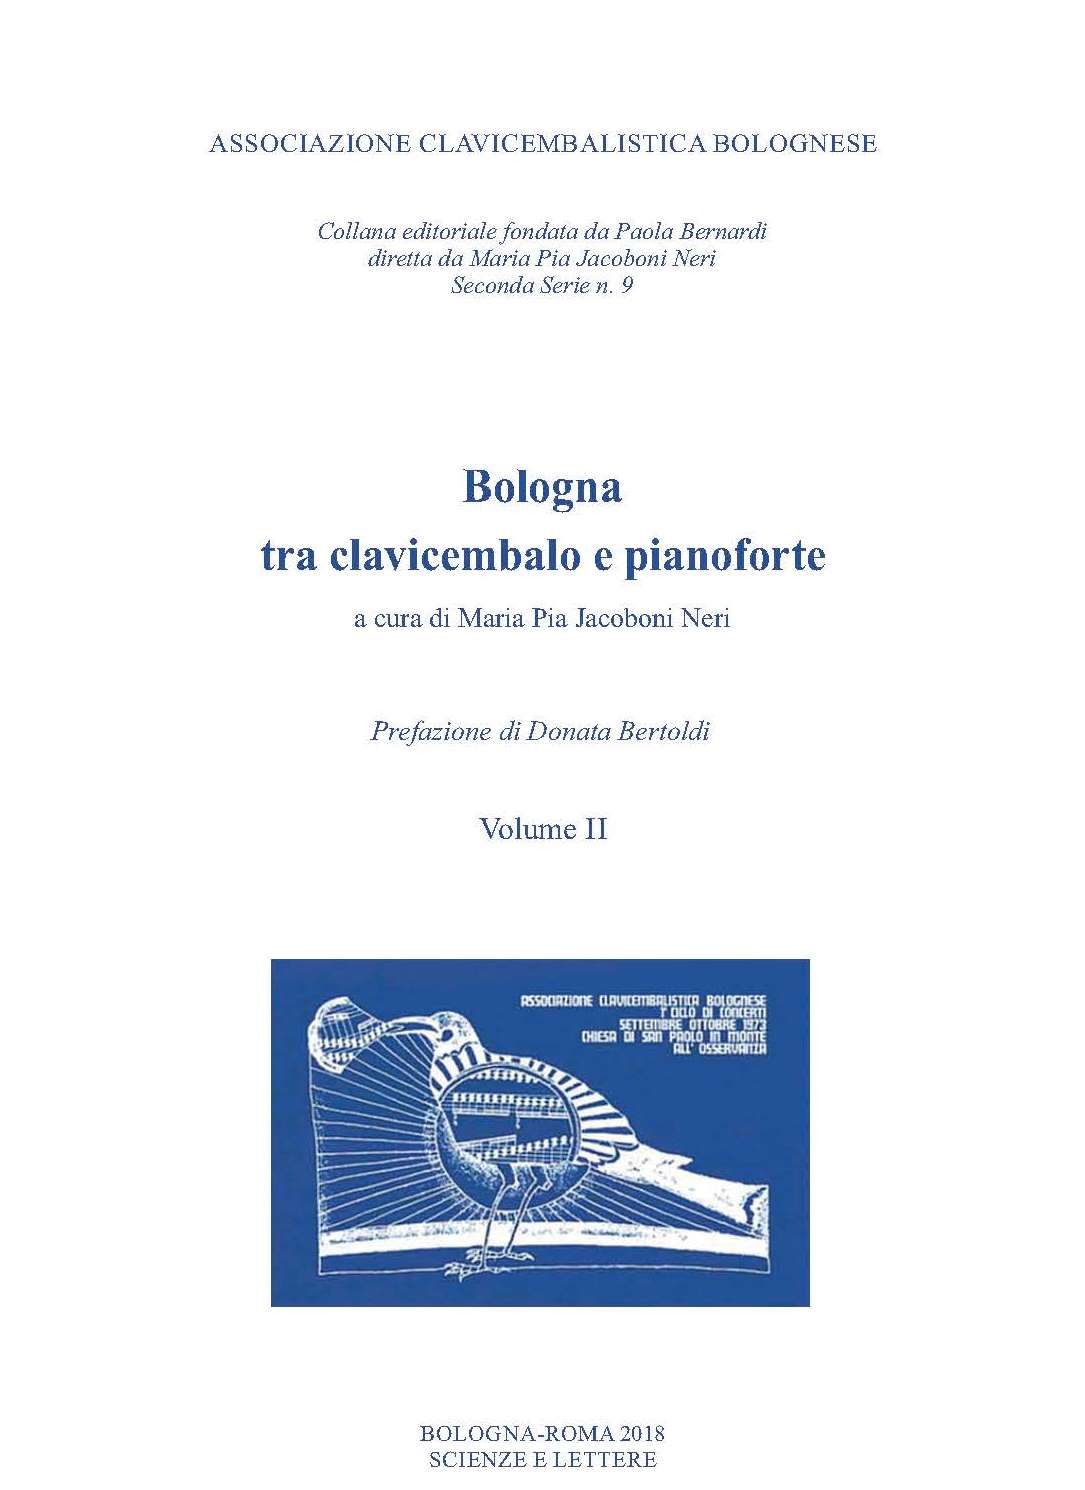 Bologna tra clavicembalo e pianoforte vol. II